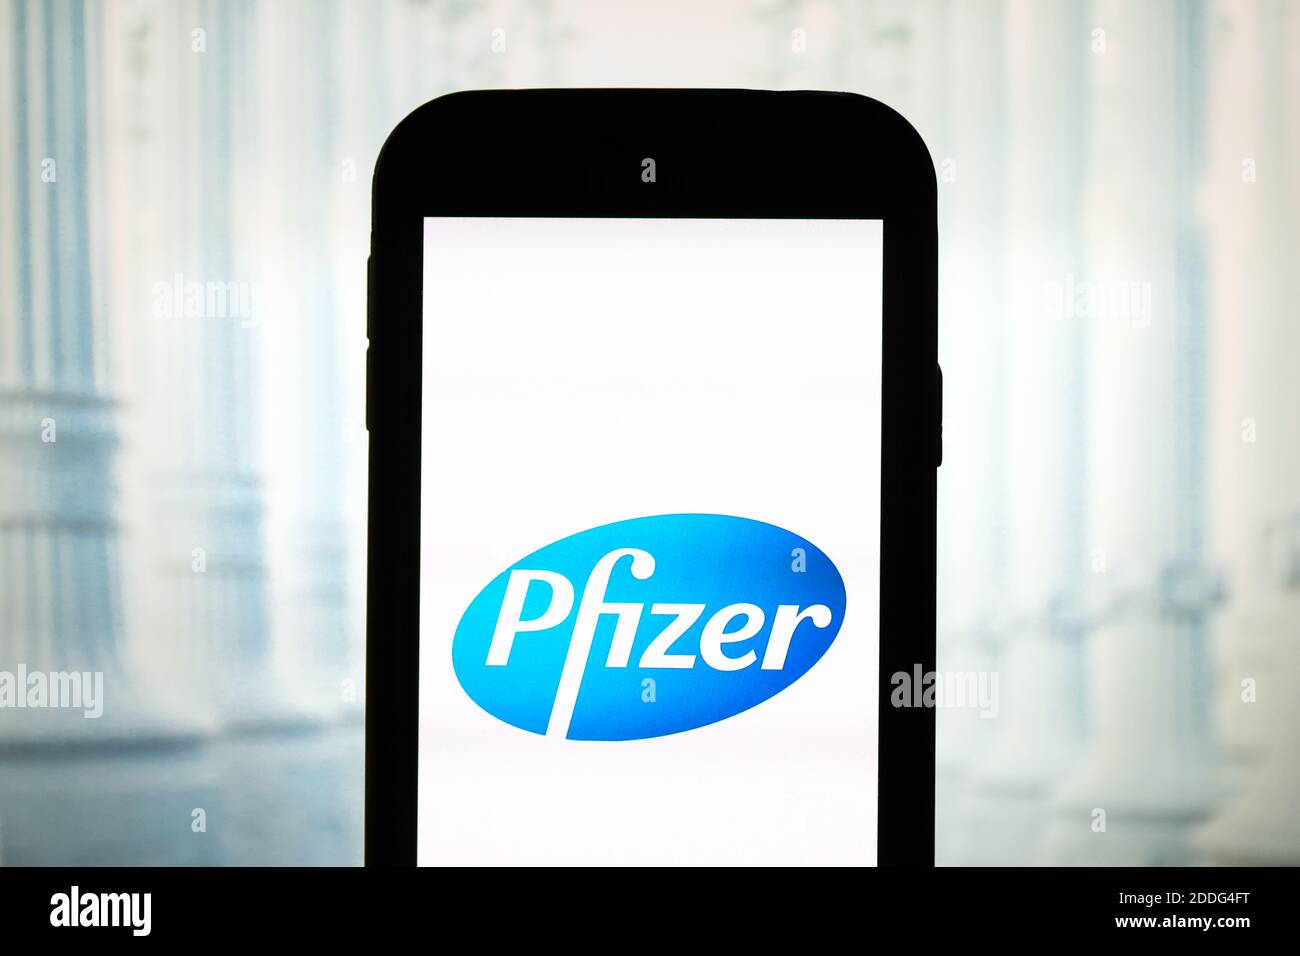 In questa illustrazione fotografica viene visualizzato un logo di Pfizer Pharmaceutical Company sullo smartphone. Foto Stock